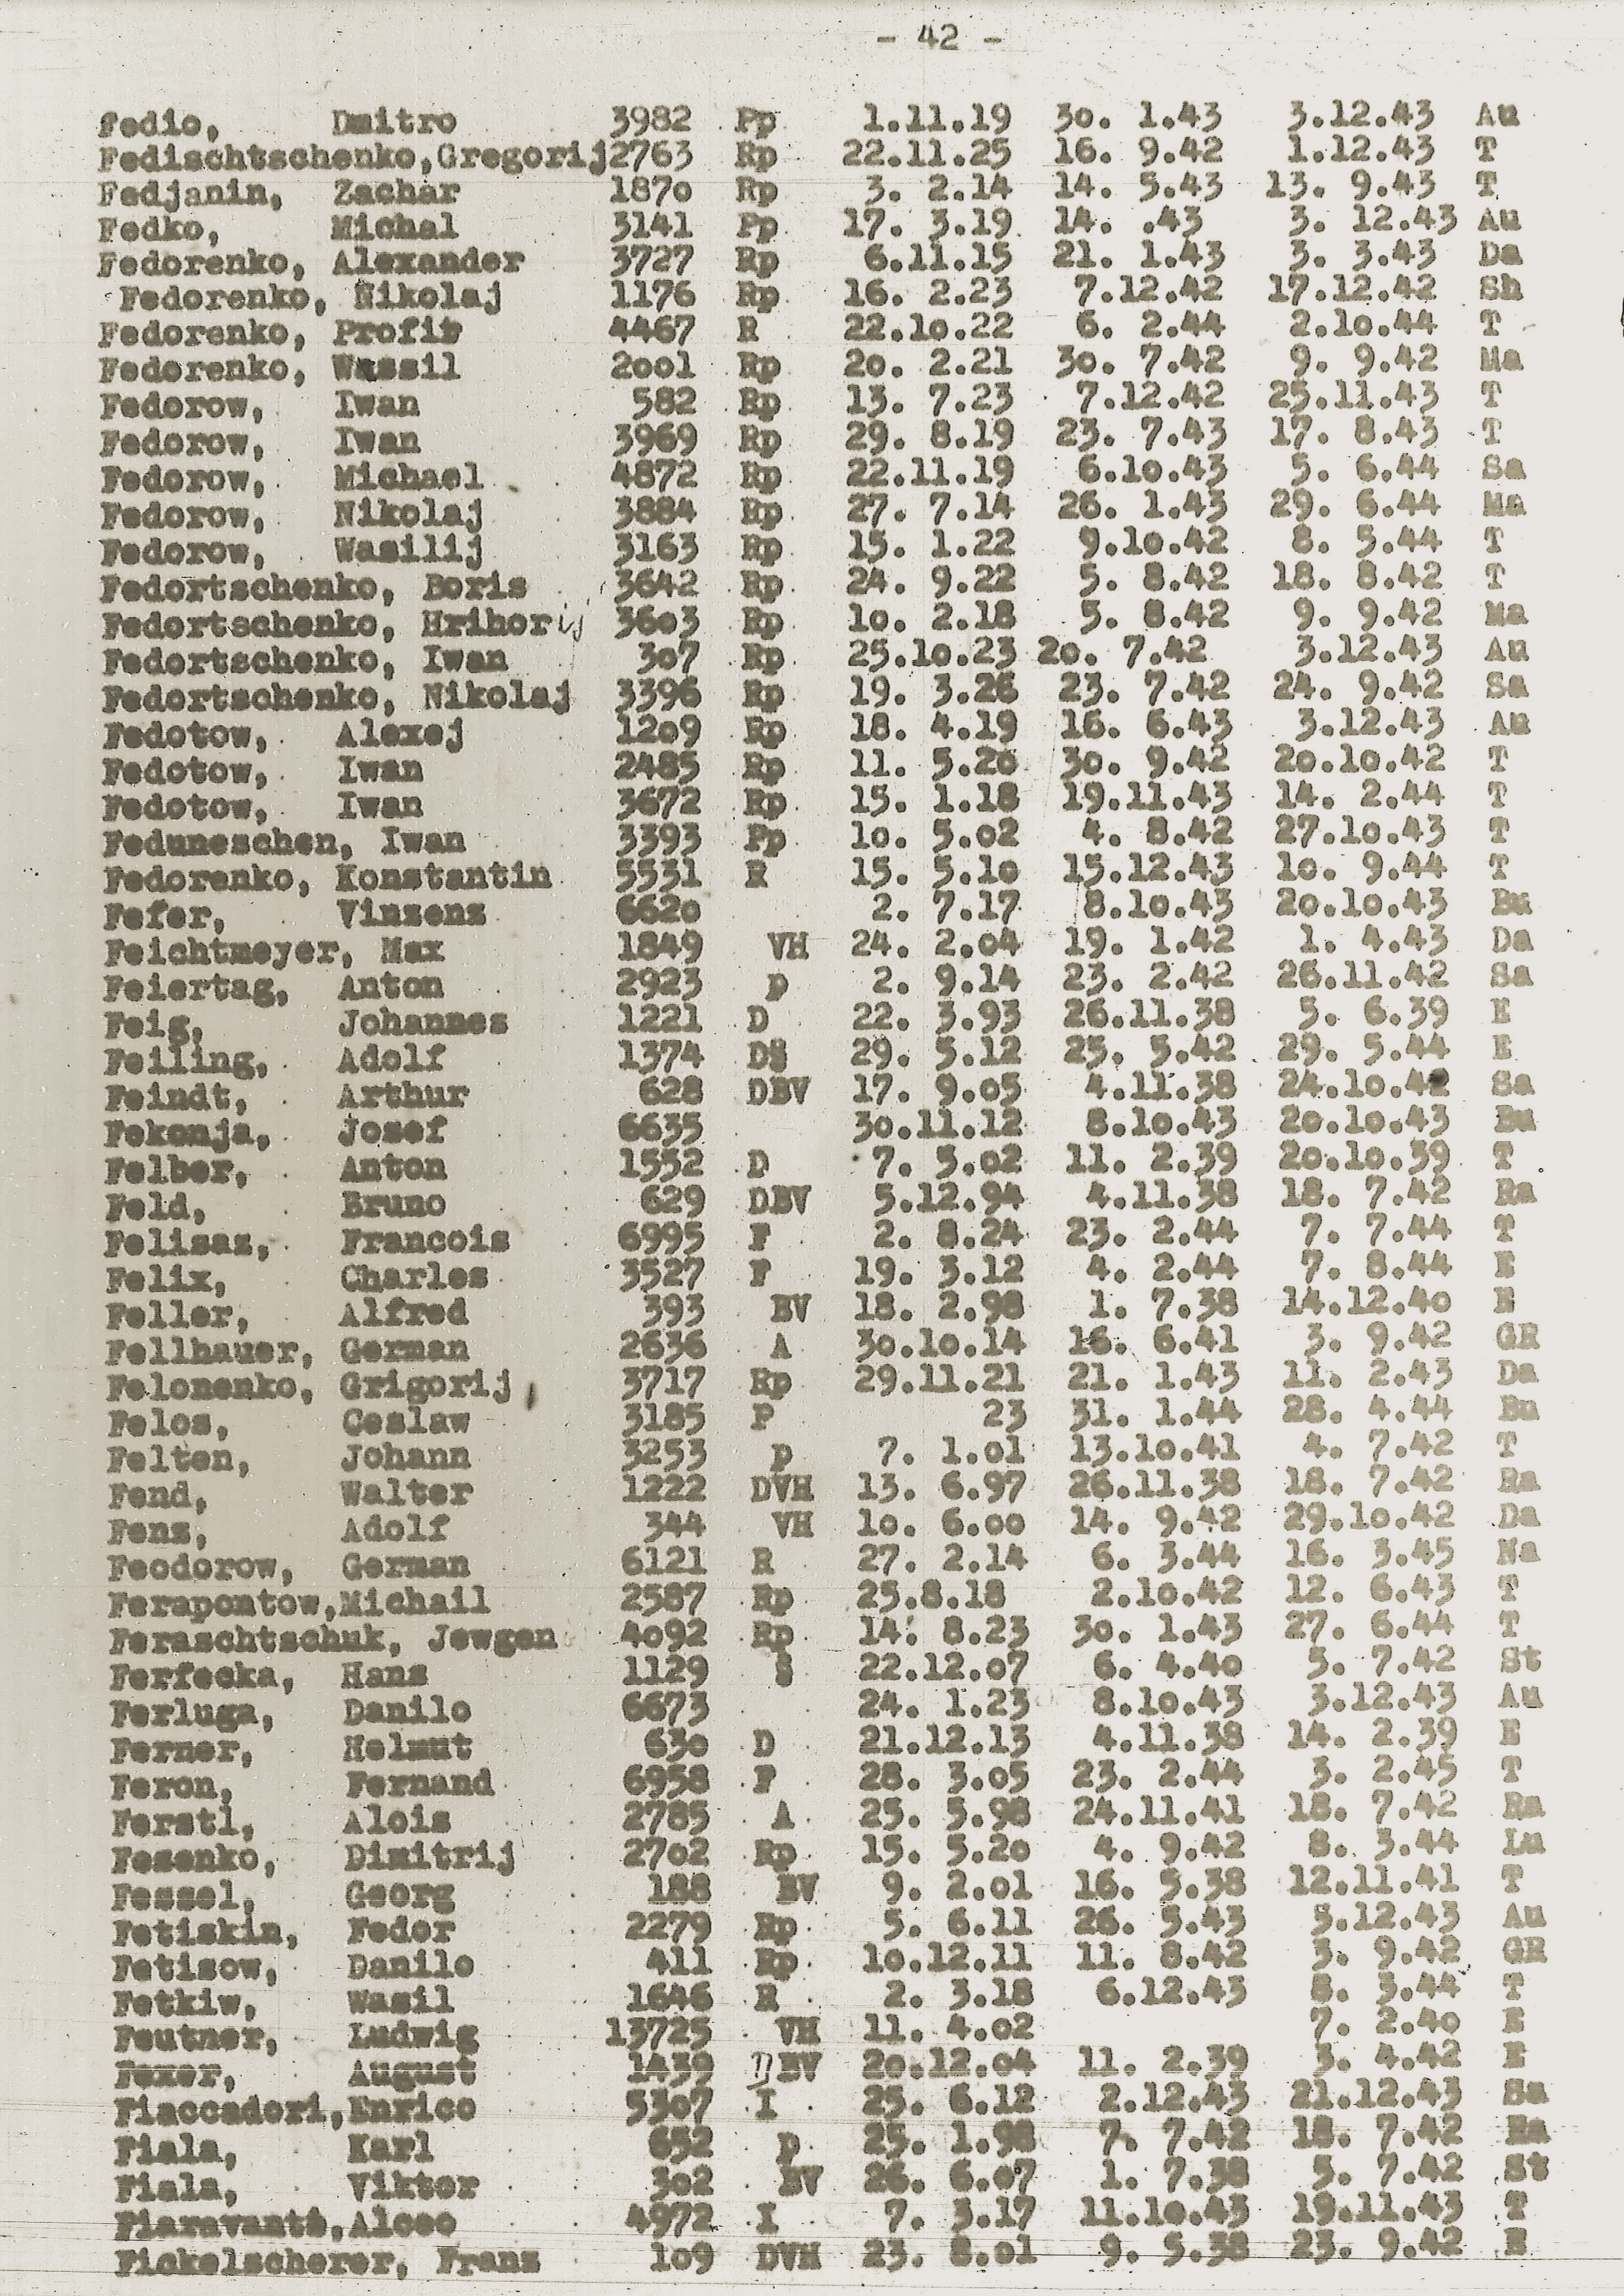 Liste mit den Namen der Häftlinge des KZ Flossenbürg. An 7. Stelle von unten steht Ludwig Feutner; das Kürzel „VH“ hinter seinem Namen bedeutet: „Vorbeugehaft“. Feutner wird am 27. September 1939 mit einer Gruppe von fast 1.000 Häftlingen von Dachau (bei München) in das fränkische KZ Flossenbürg überstellt. Er behält weiterhin die Dachauer Häftlingsnummer, wird allerdings nicht – wie die meisten anderen – Anfang März zurückverlegt, sondern am 7. Februar 1940 entlassen. Auszug aus der US Dokumentation, Häftlingsliste 